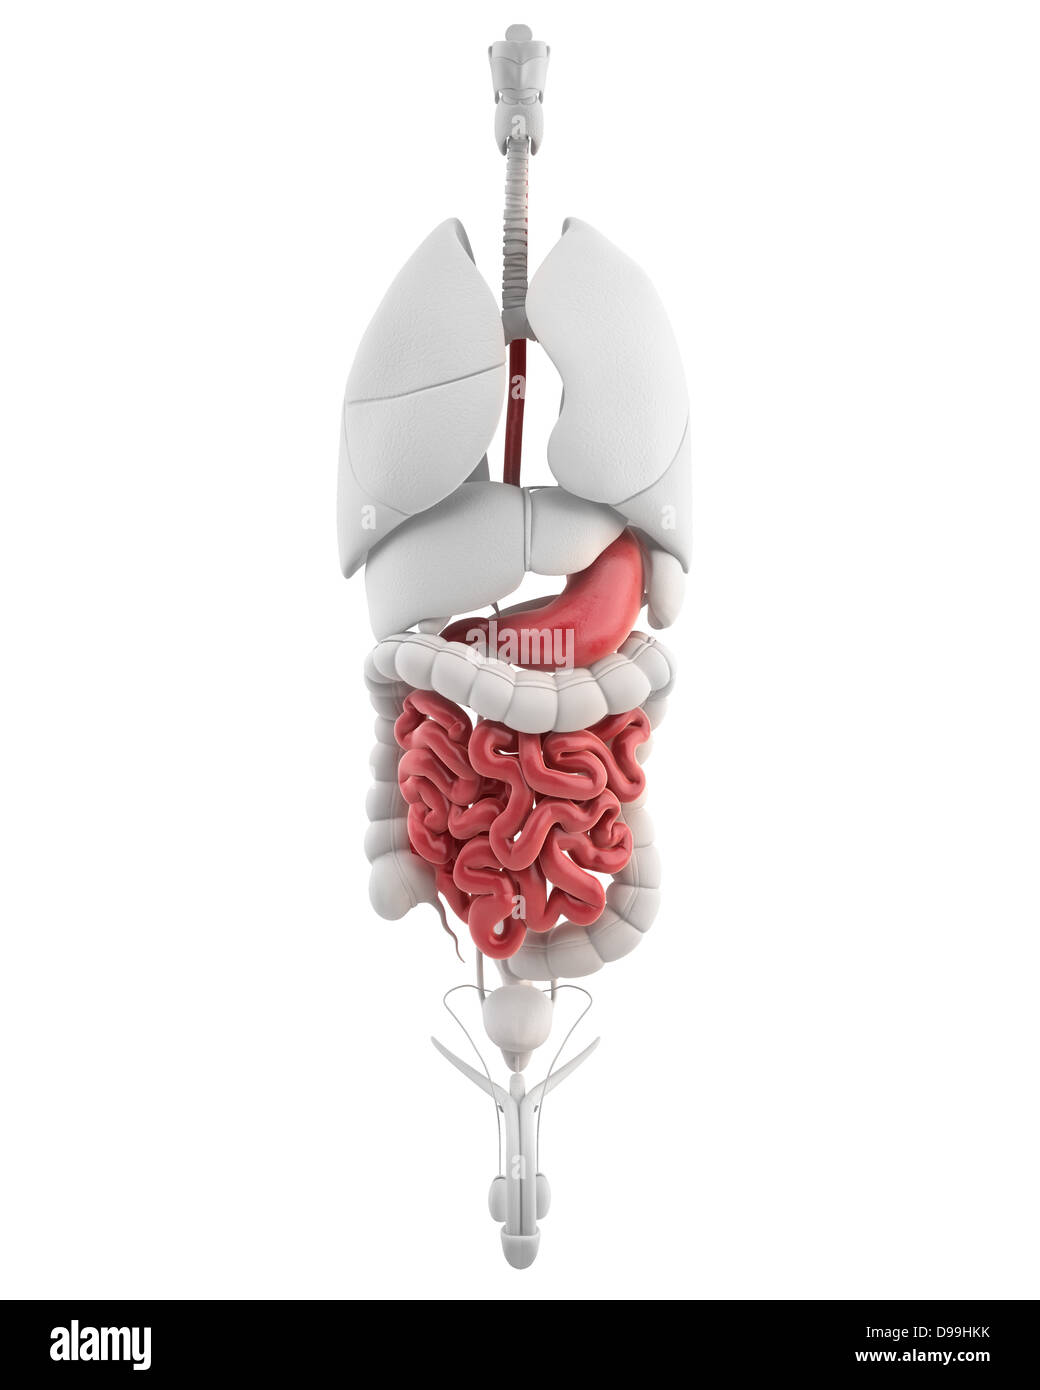 Anatomie de l'estomac de l'homme avec tous les organes internes Banque D'Images